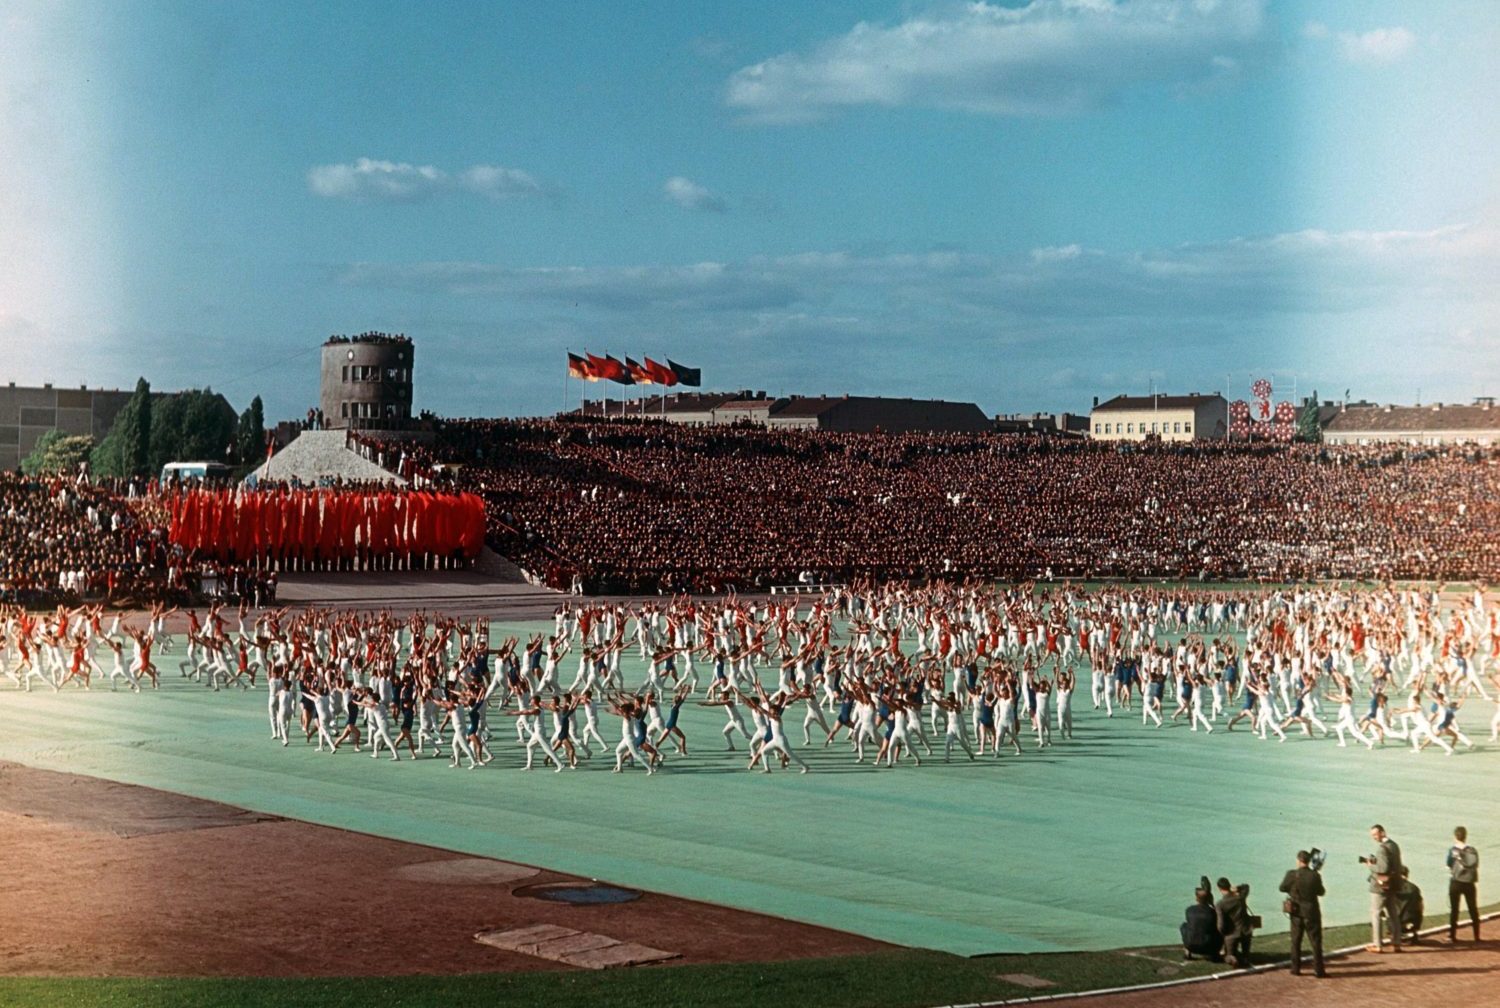 Berlin 1960er: Massenturndarbietung im Stadion der Weltjugend in Berlin während des Deutschlandtreffens 1964. Foto: Imago/Werner Schulze